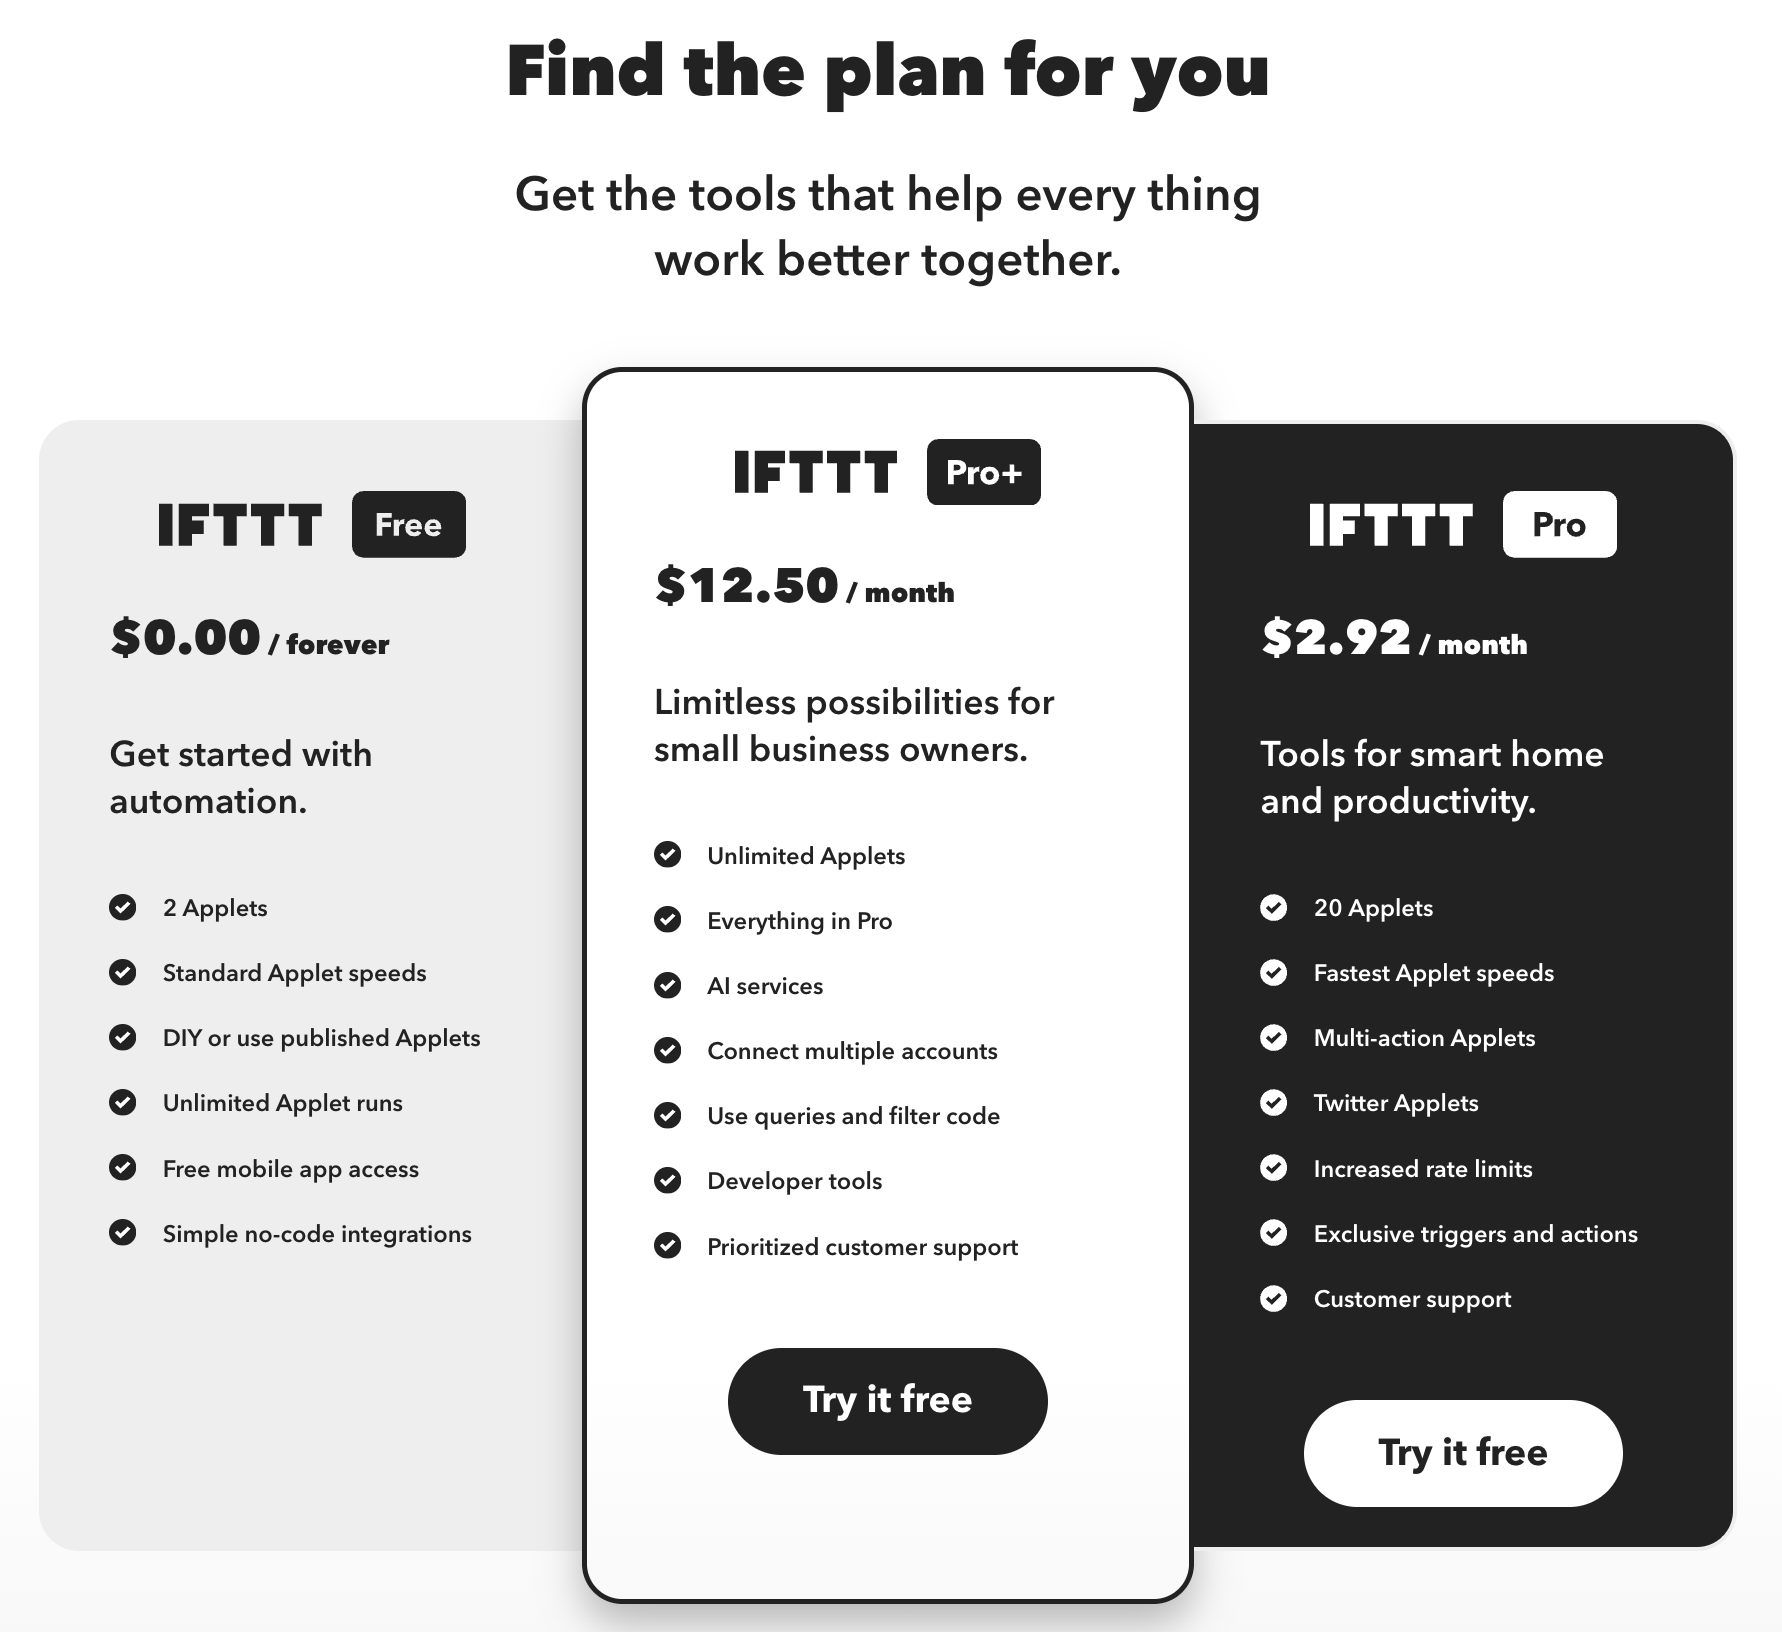 IFTTT pricing